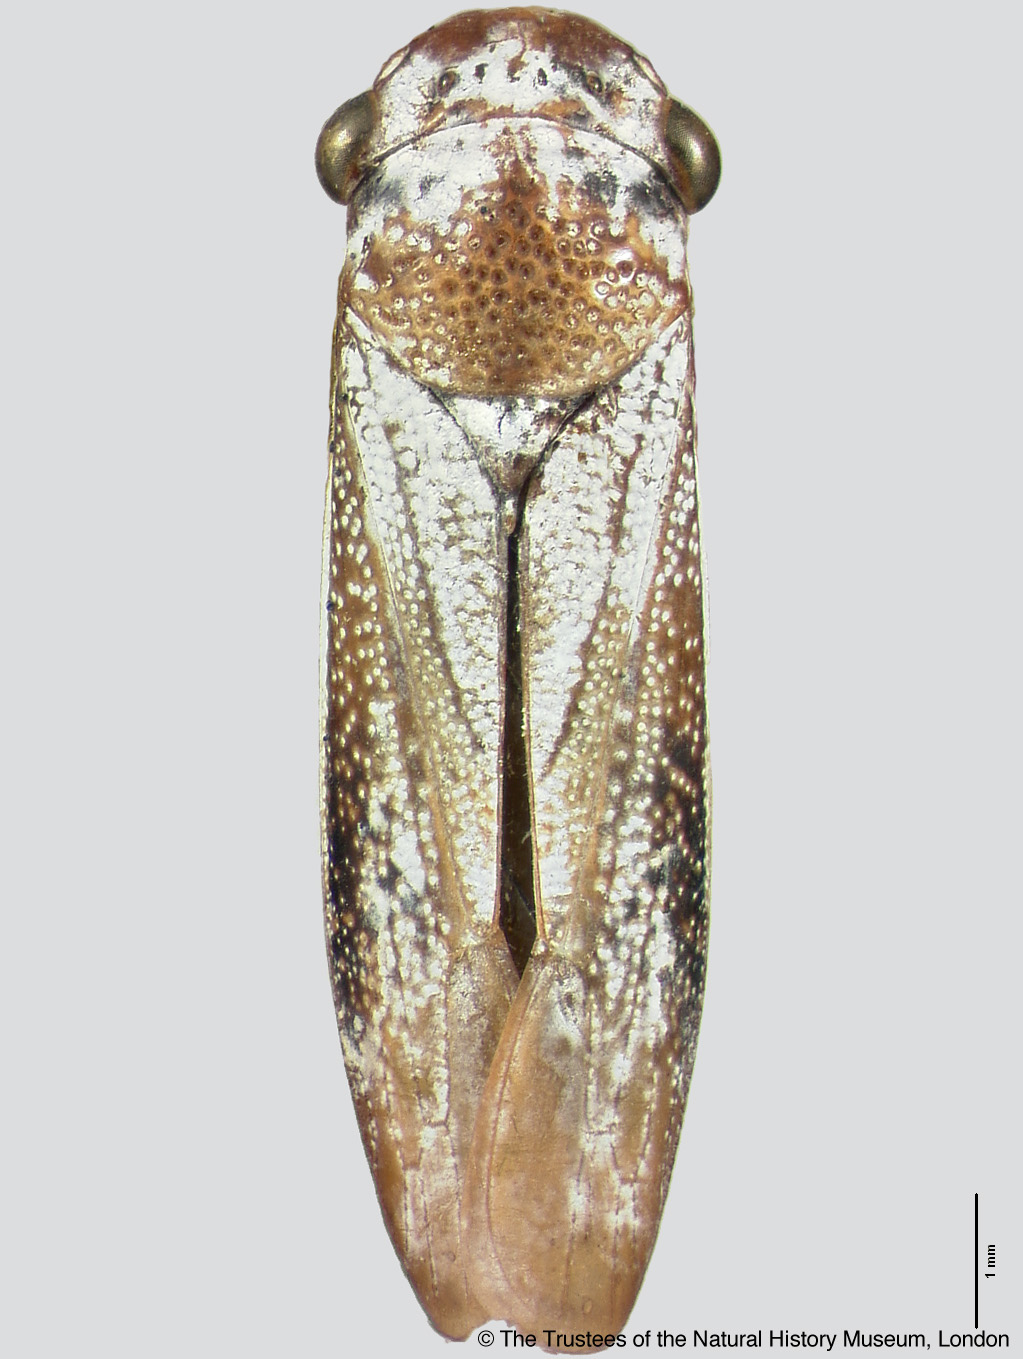 Tretogonia callifera